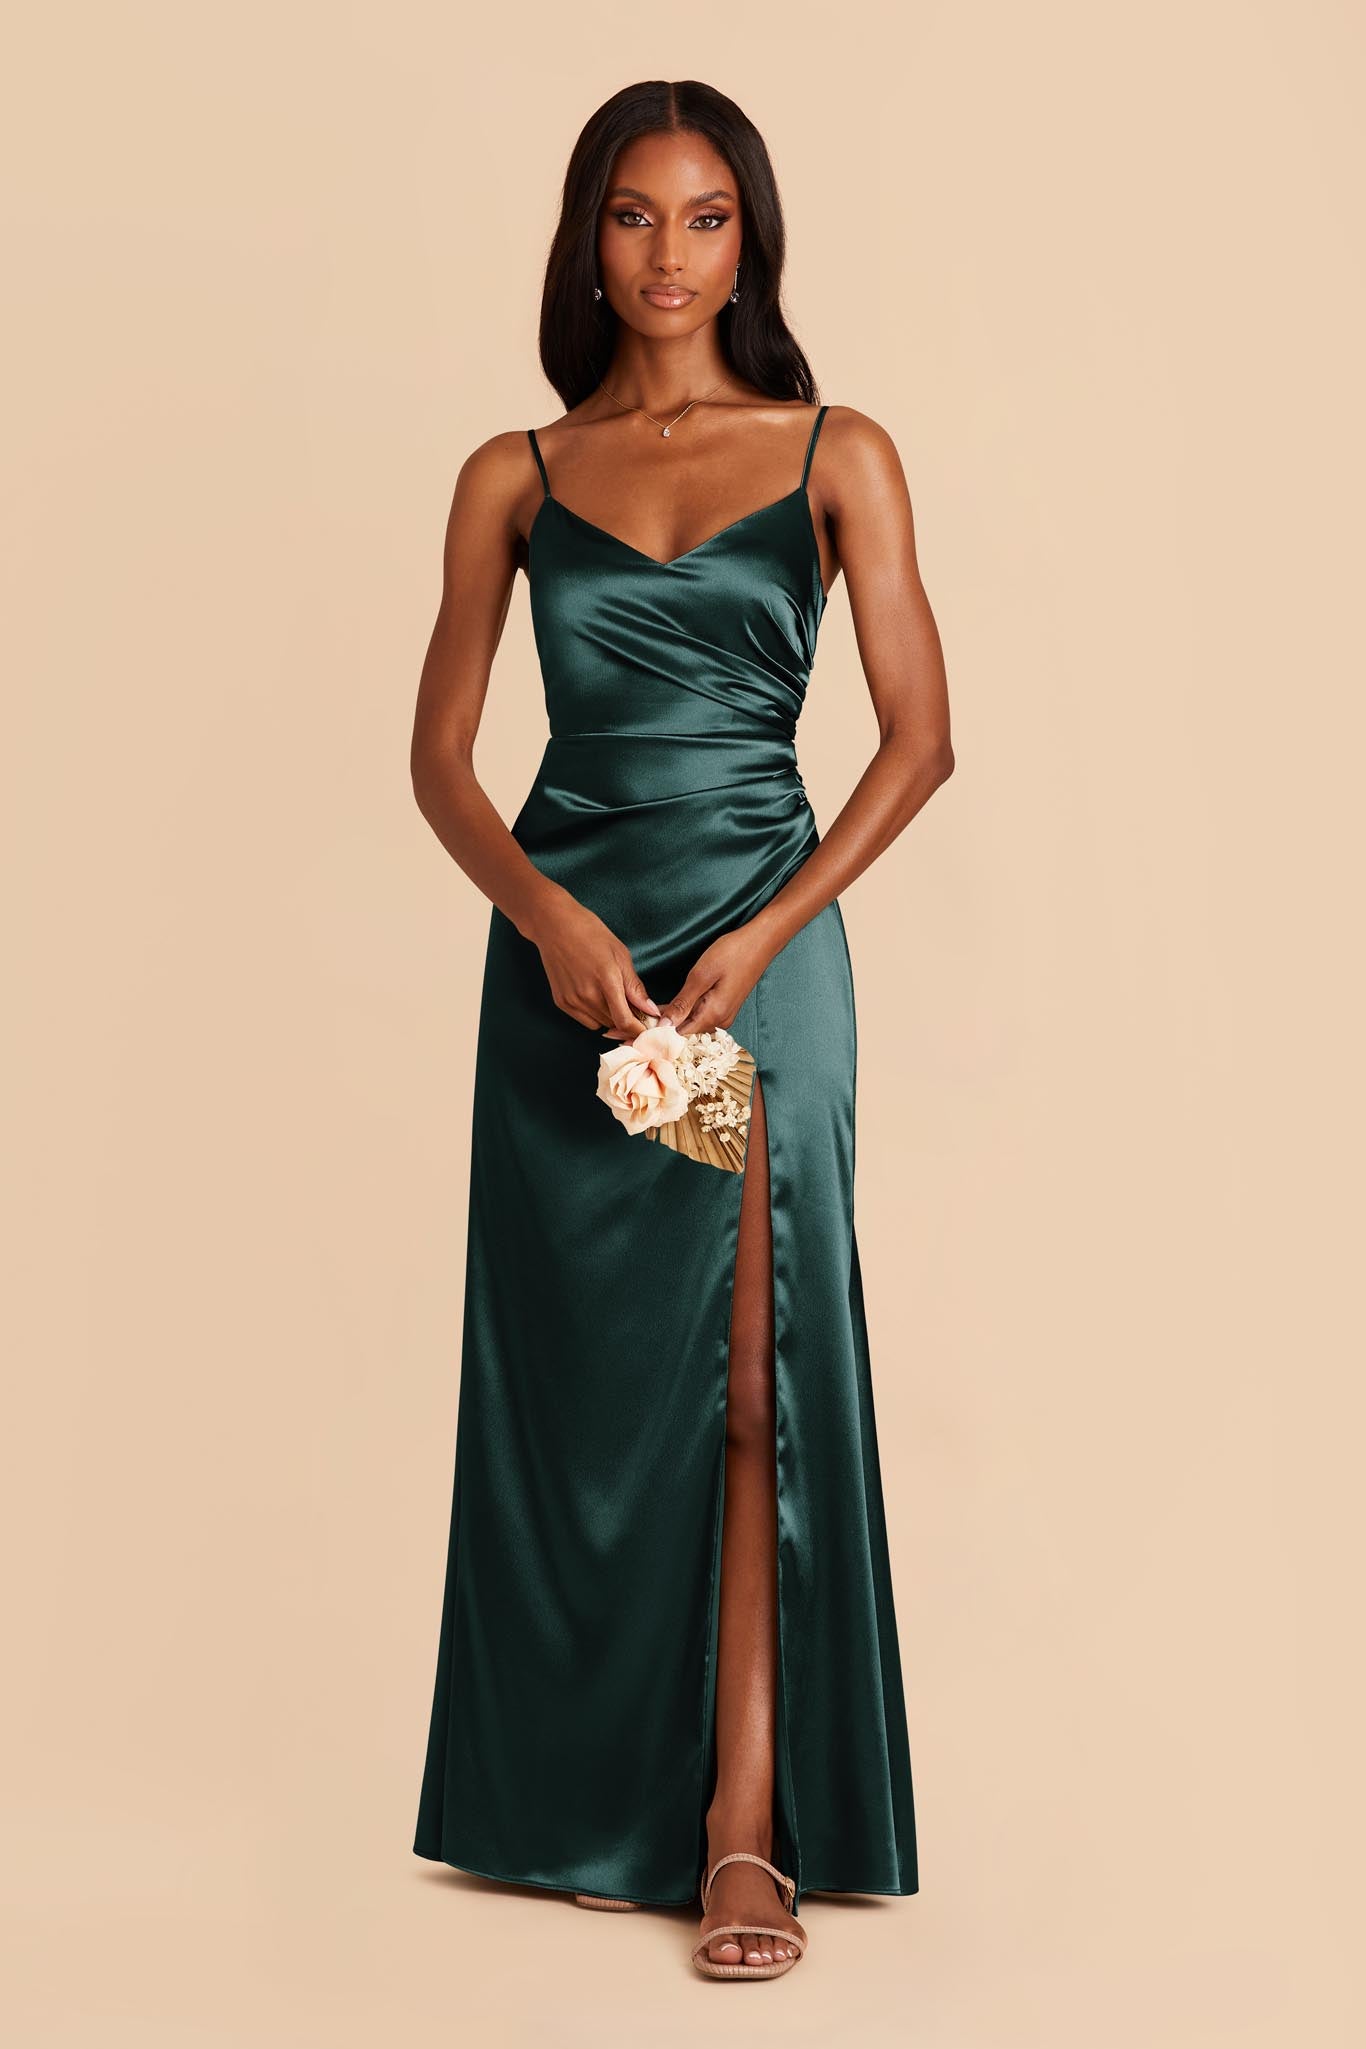 Emerald Catherine Shiny Satin Dress by Birdy Grey